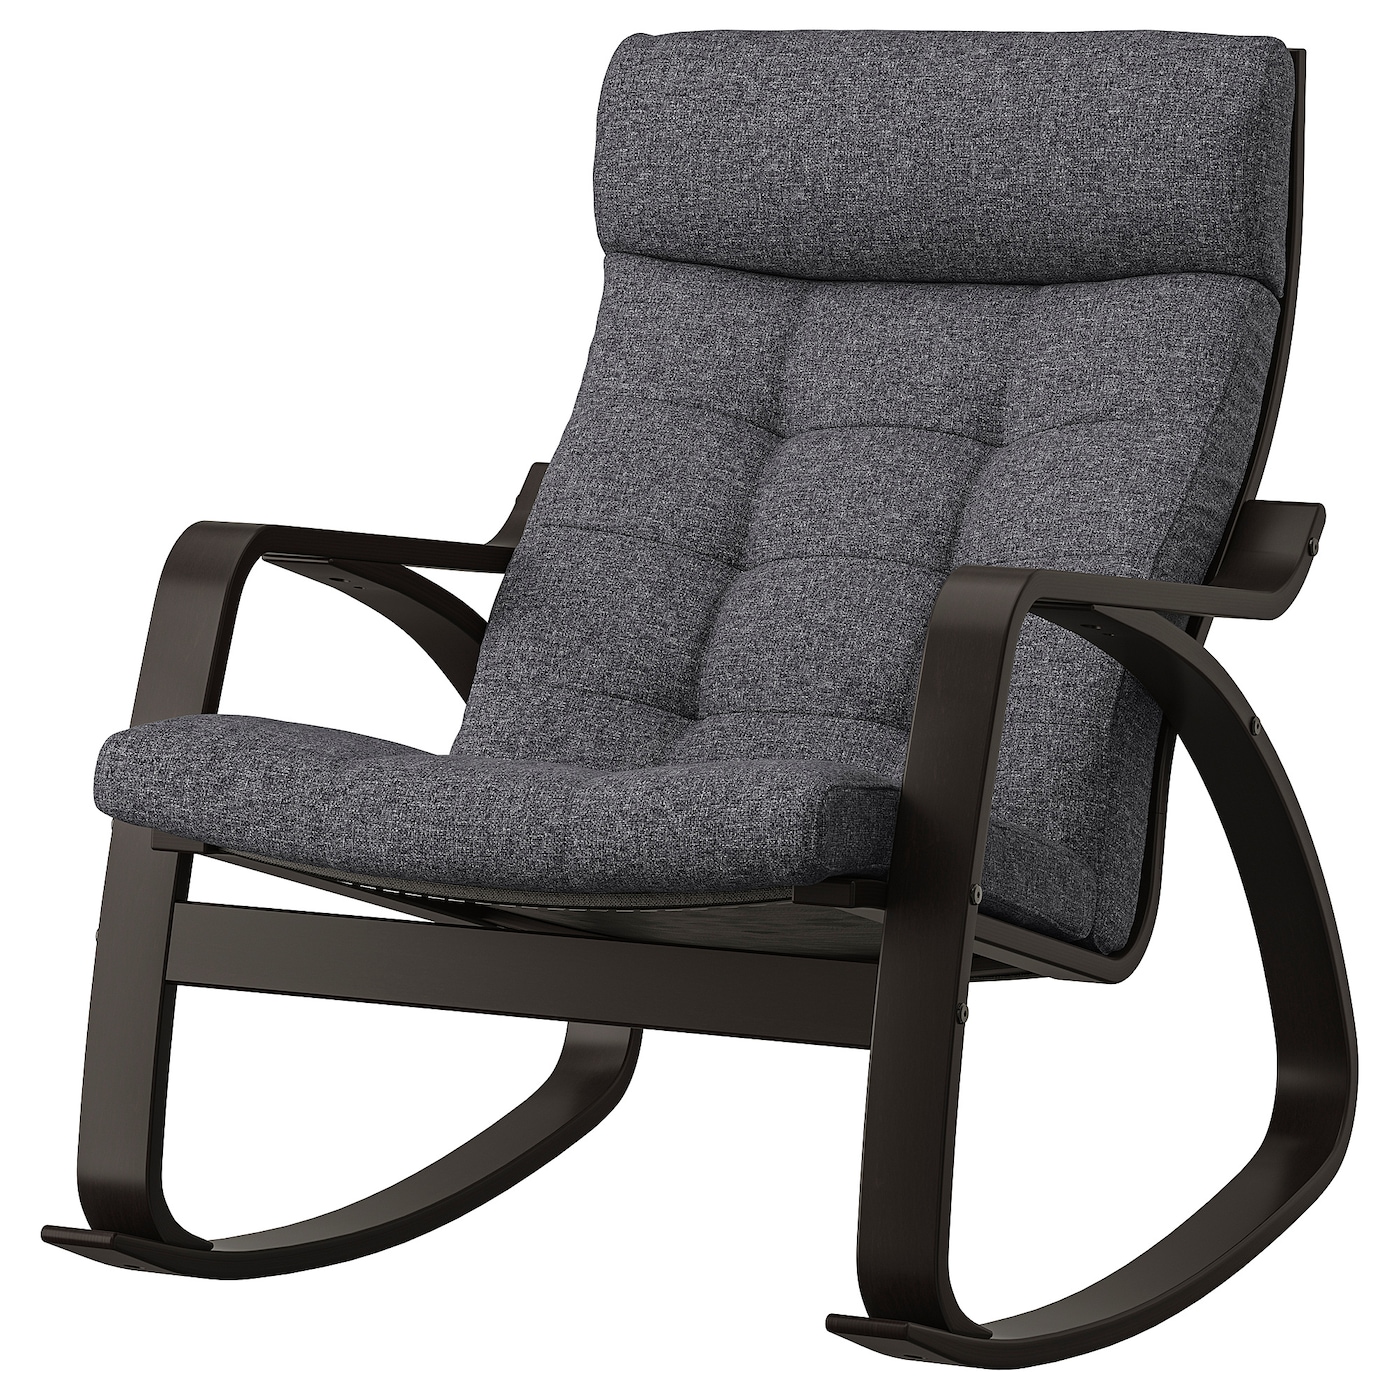 детское кресло качалка lazychild удобное кресло качалка с шейкером для сна детская кроватка качалка с колесами ПОЭНГ Кресло-качалка, черно-коричневый/Гуннаред темно-серый POÄNG IKEA